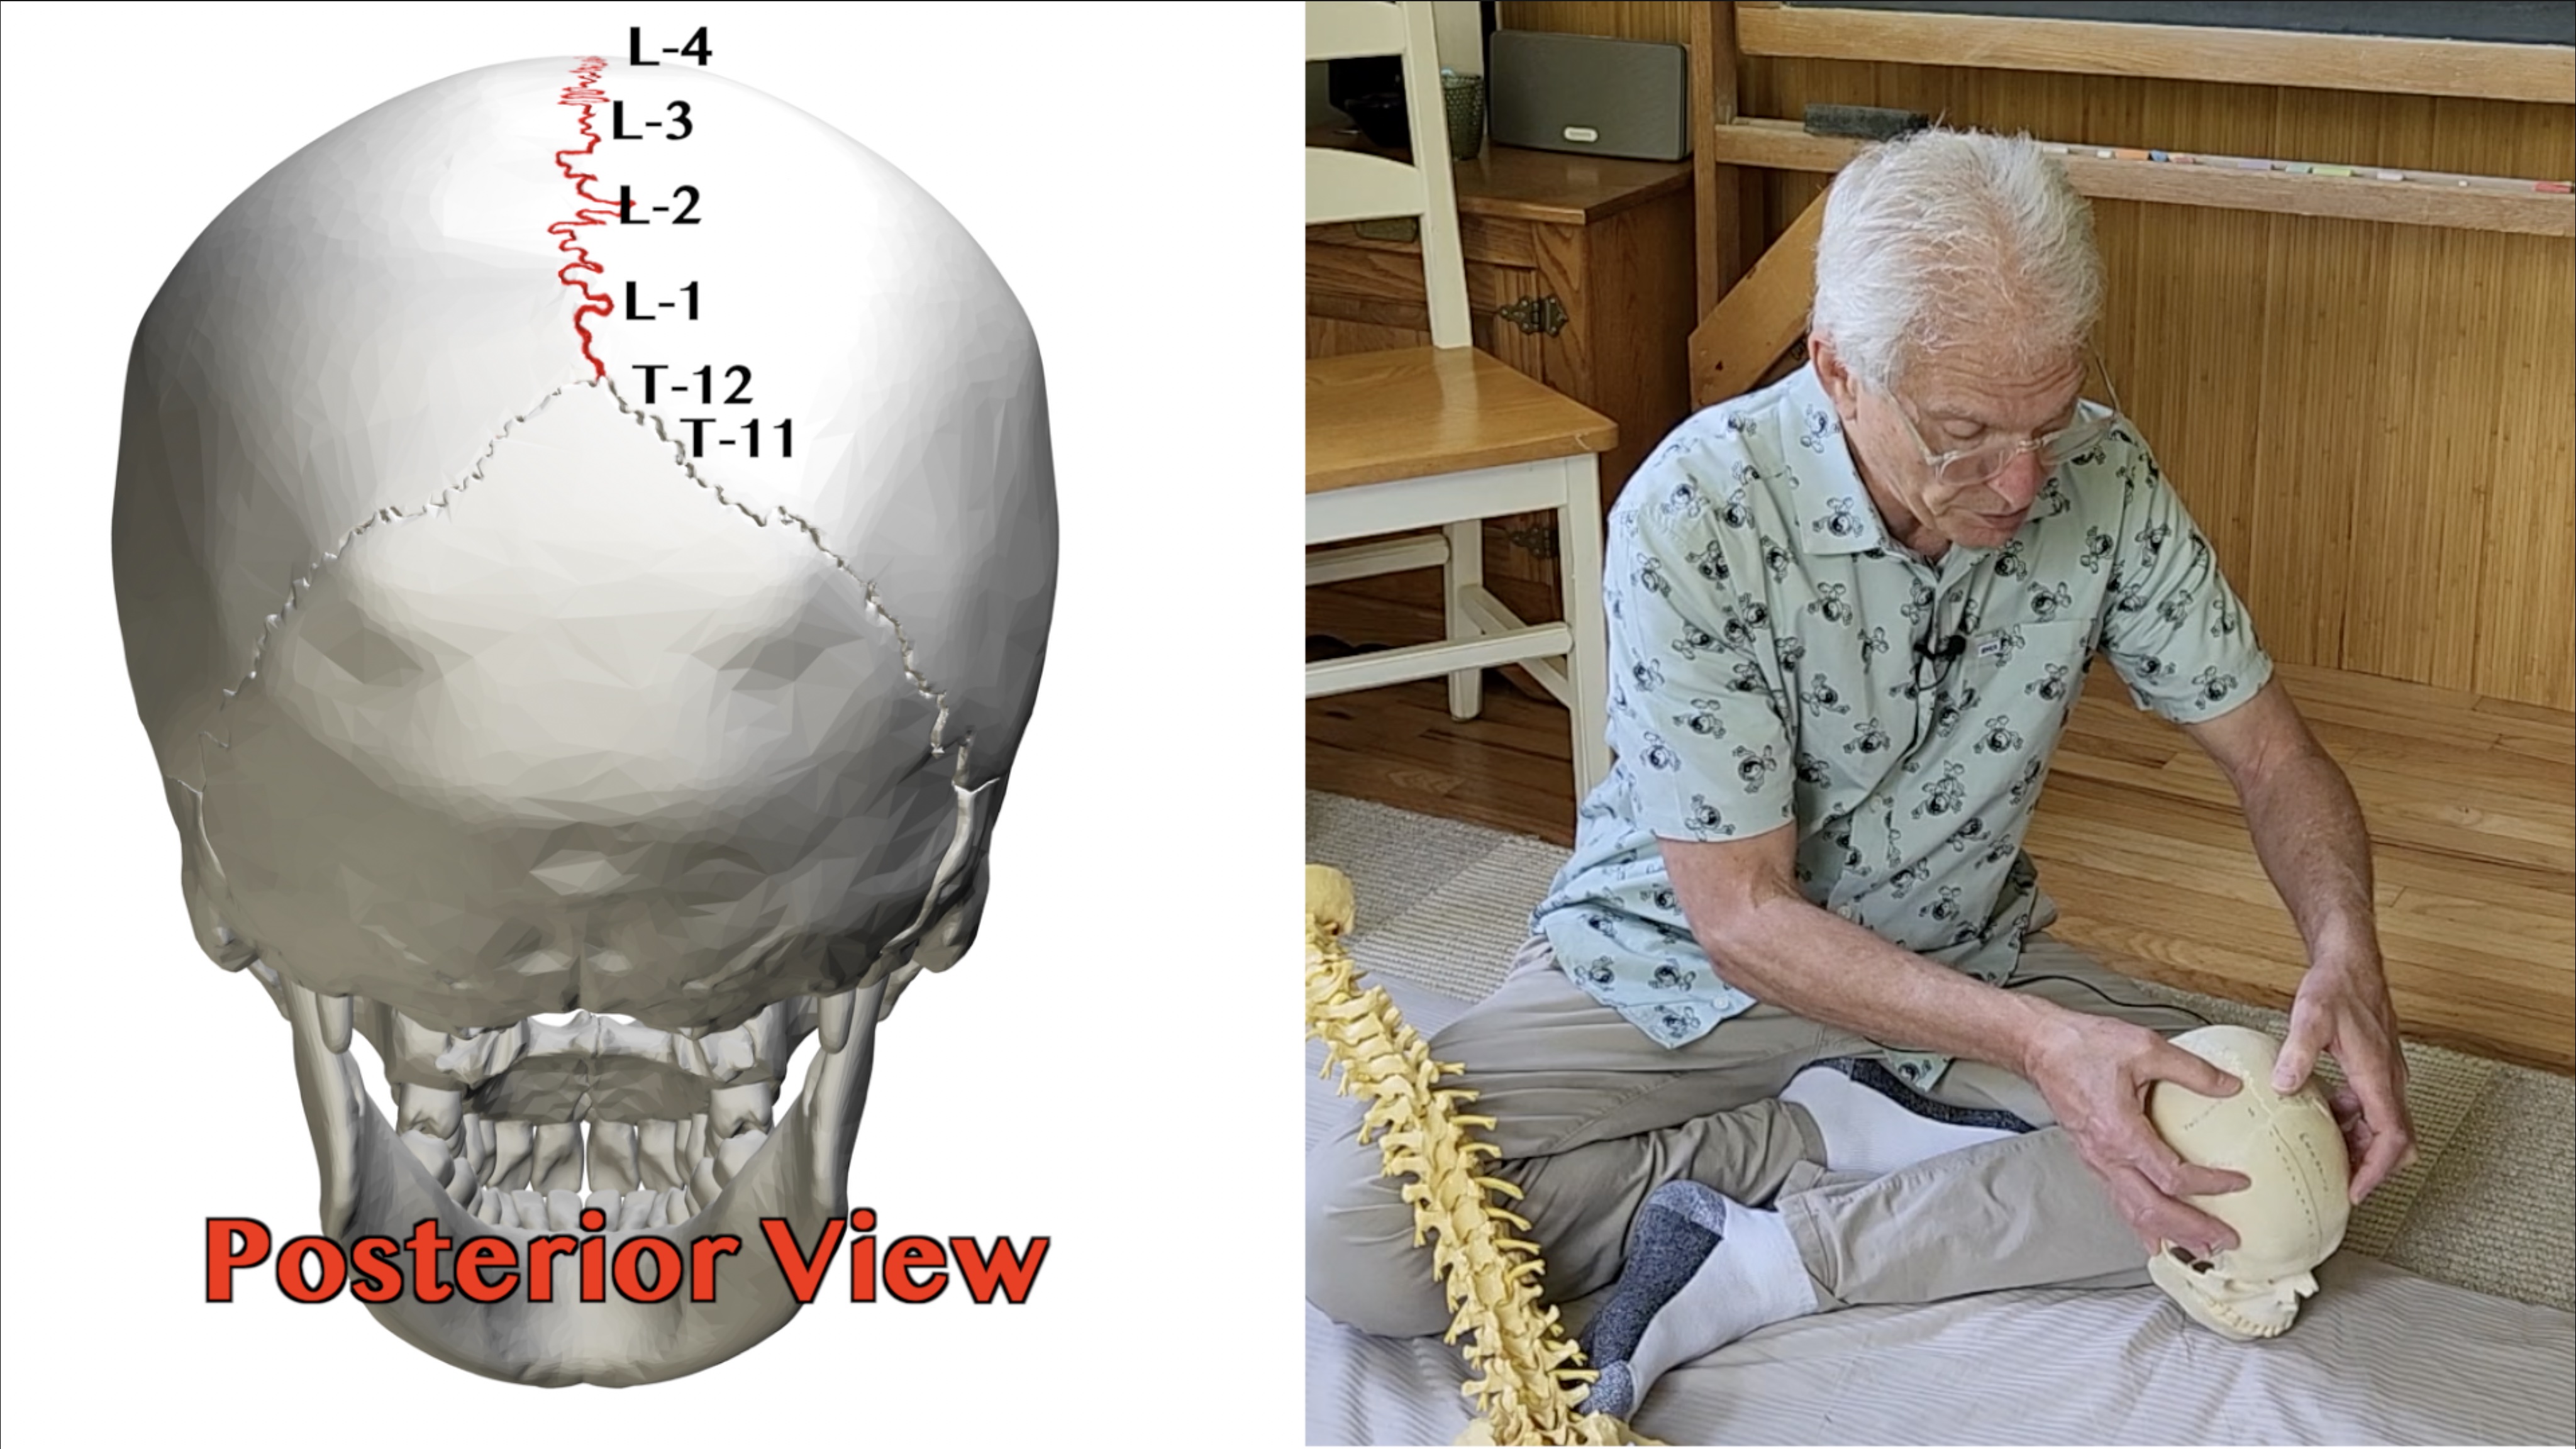 The sagittal suture and lumbar vertebrae